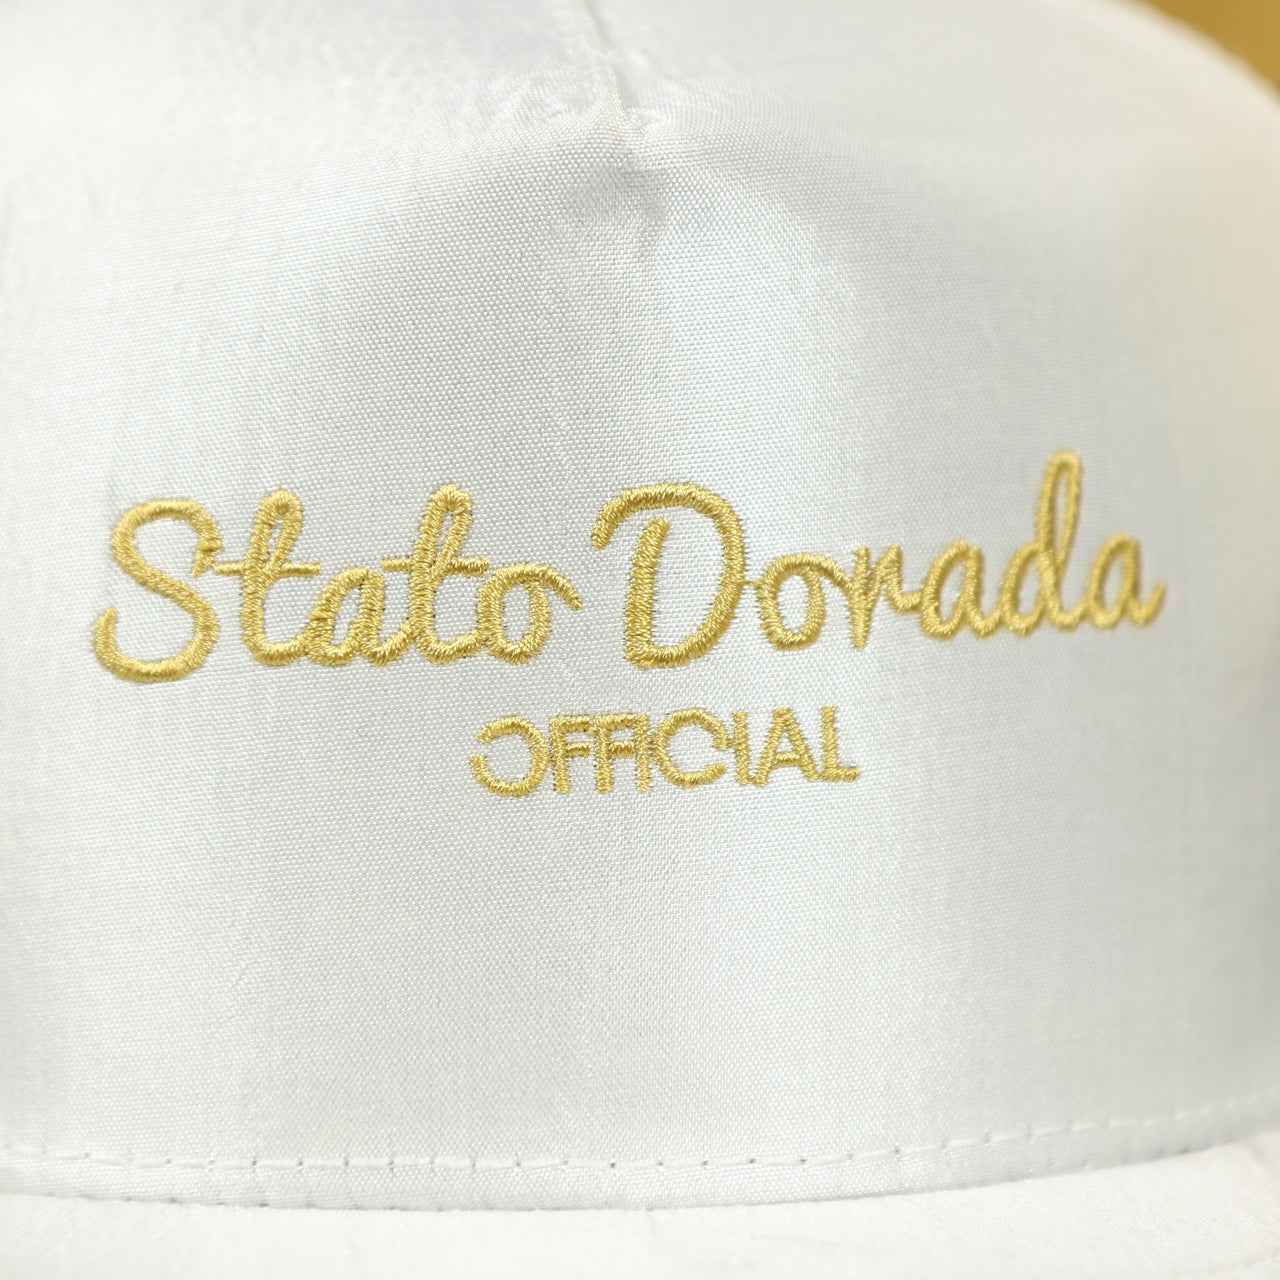 stato dorada script on the Official Stato Dorado Blanco Satin Snapback Hat